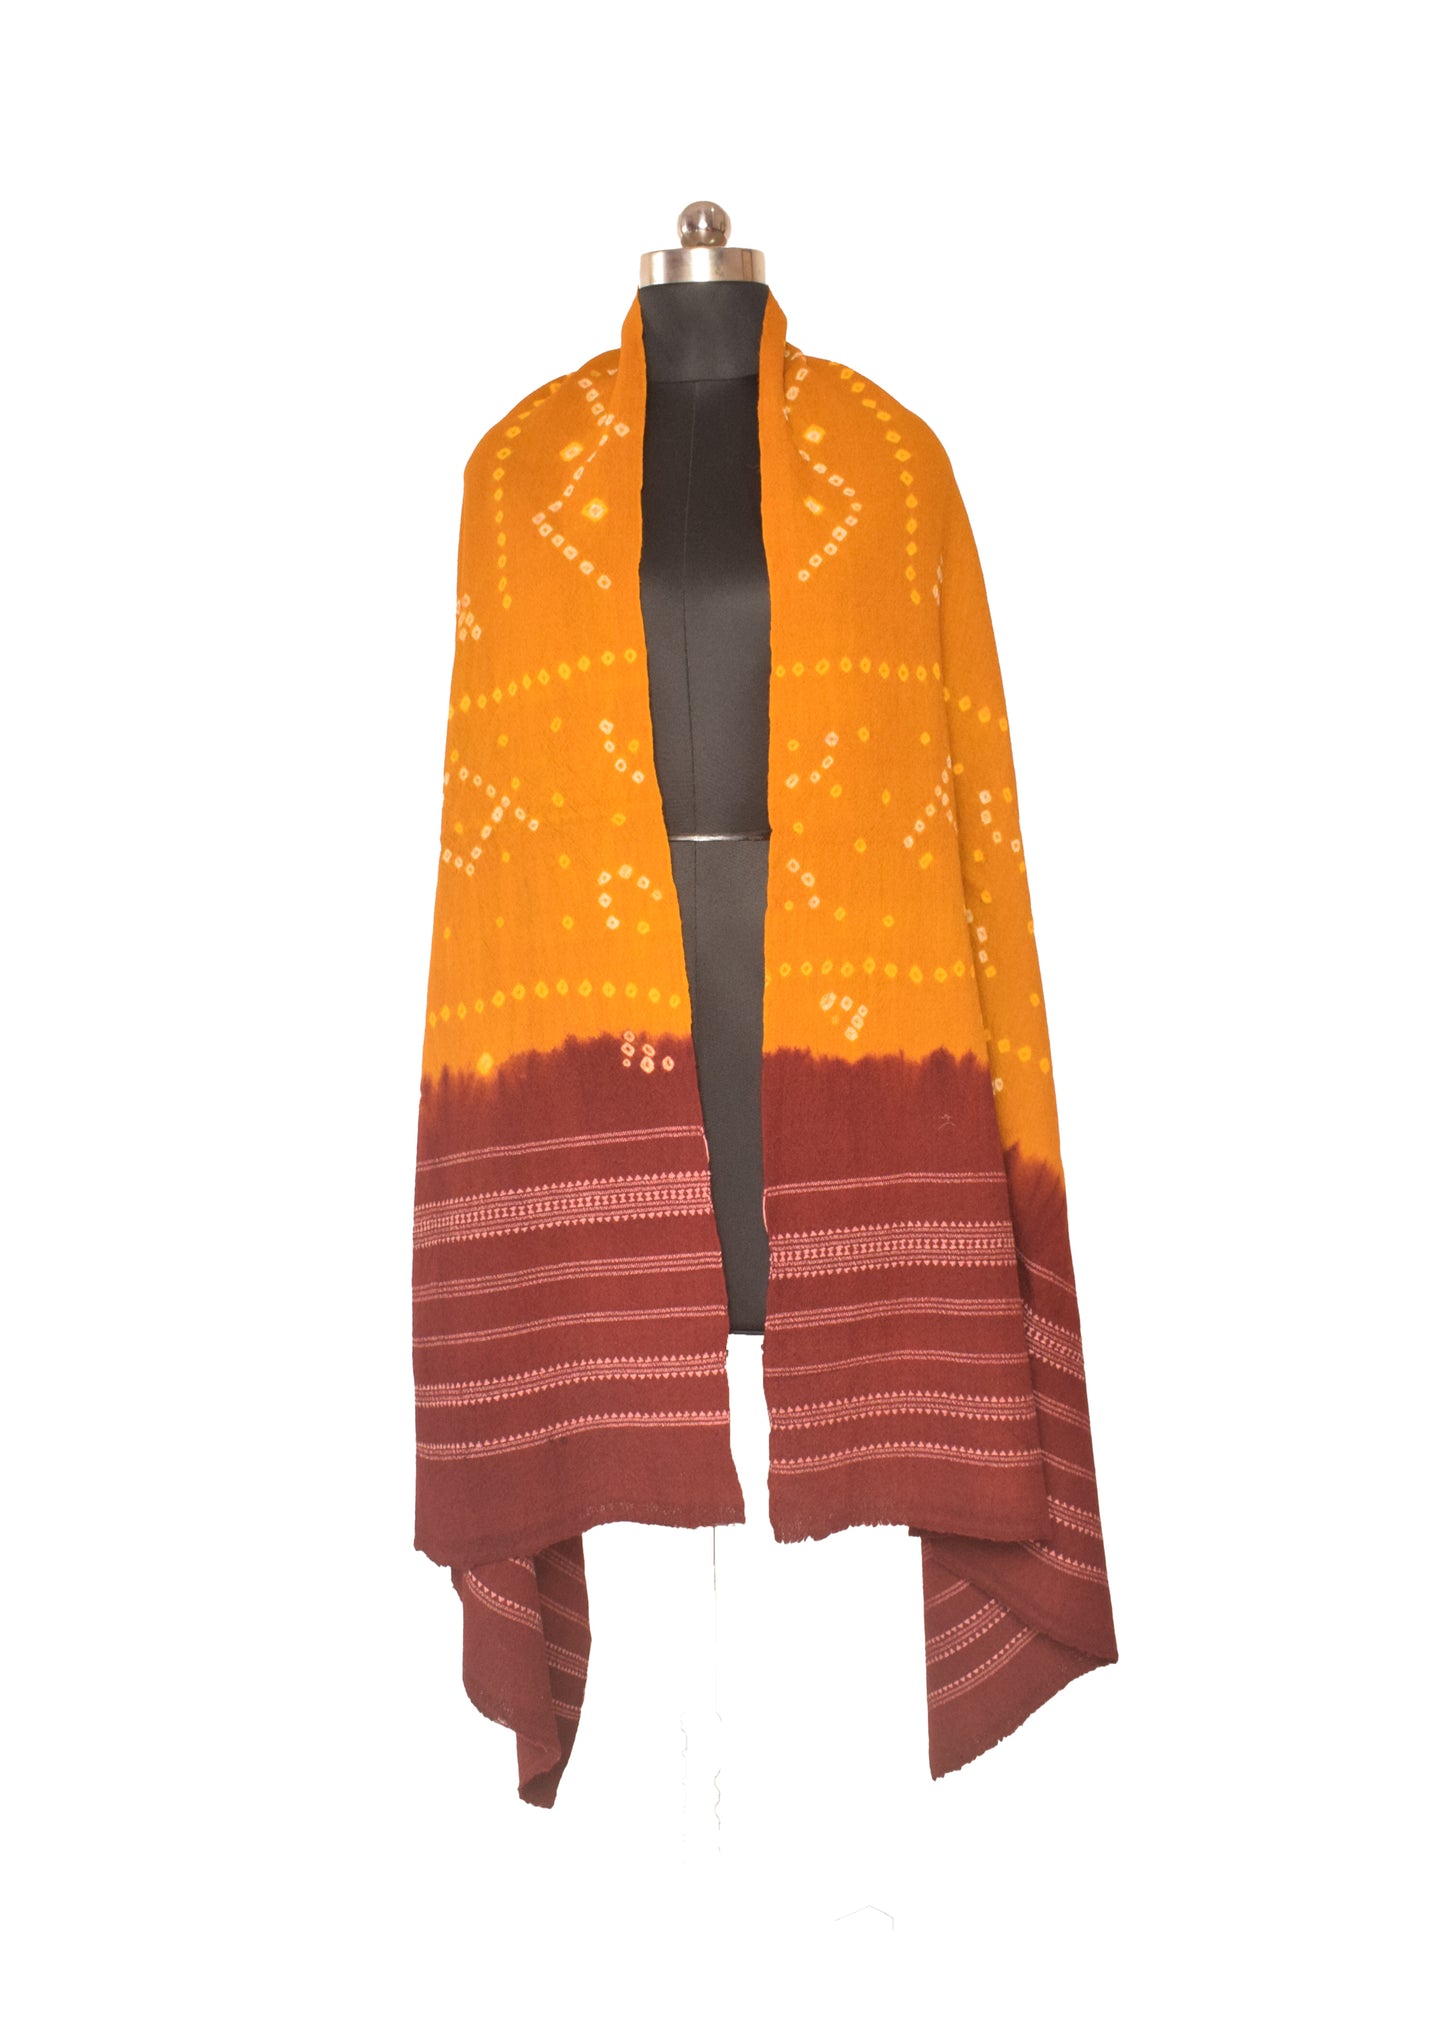 Bandhej ( Tie-Dye) Wool Shawl   - 2.1 Mtr Length    -  SKU : DB27B02C